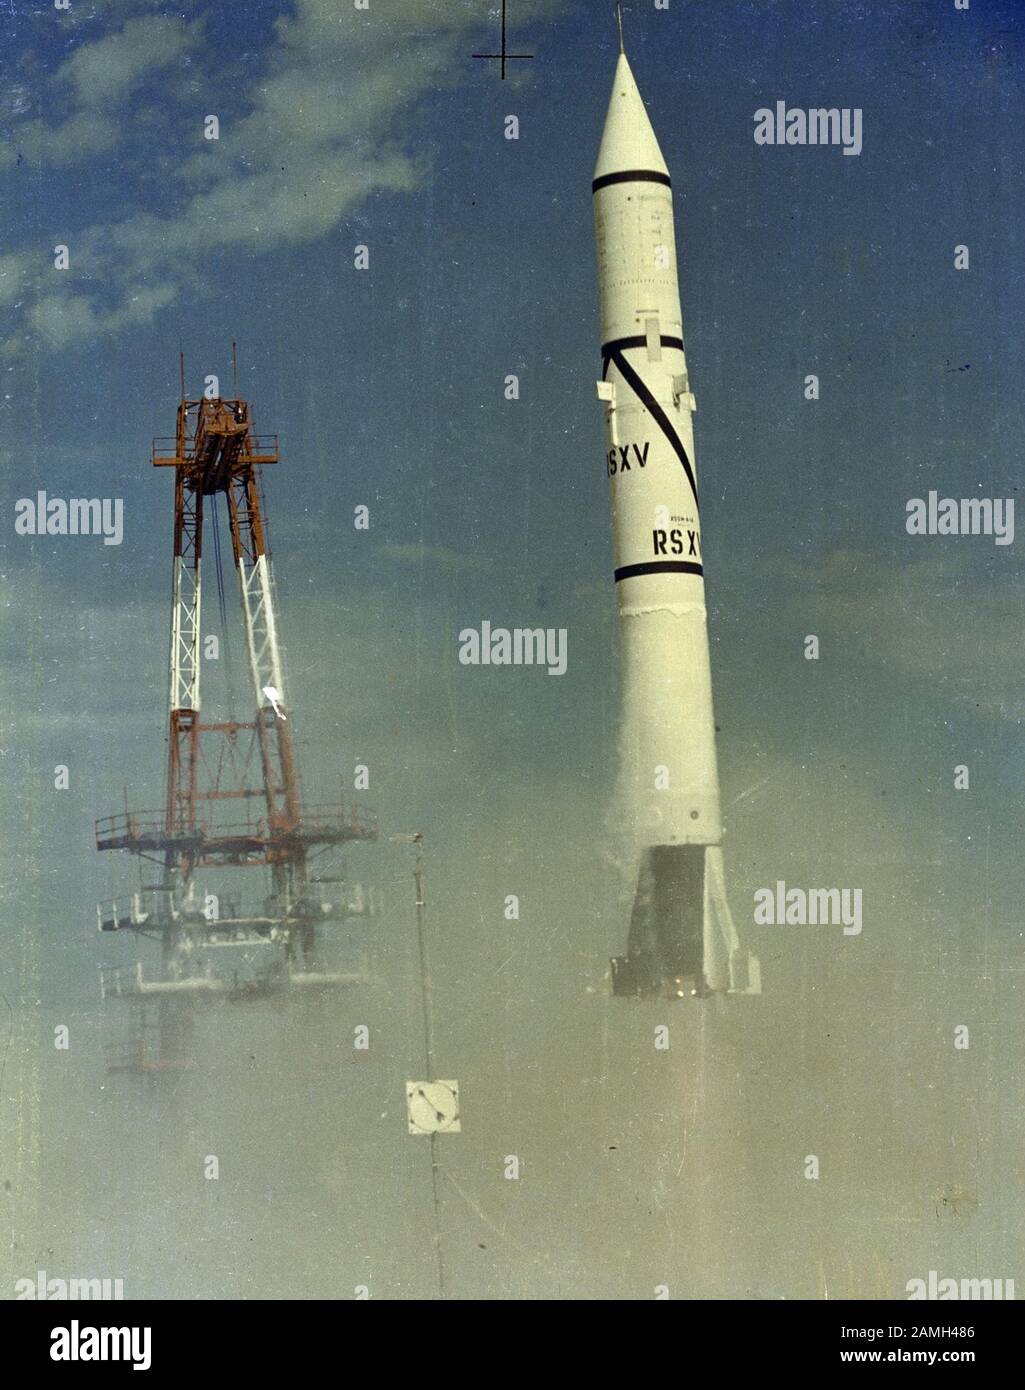 Foto des Starts der ersten PGM-11 Redstone, einer ballistischen Kurzstreckenrakete, am Cape Canaveral, Florida, Vereinigte Staaten, 20. August 1953. Bild mit freundlicher Genehmigung der NASA. () Stockfoto